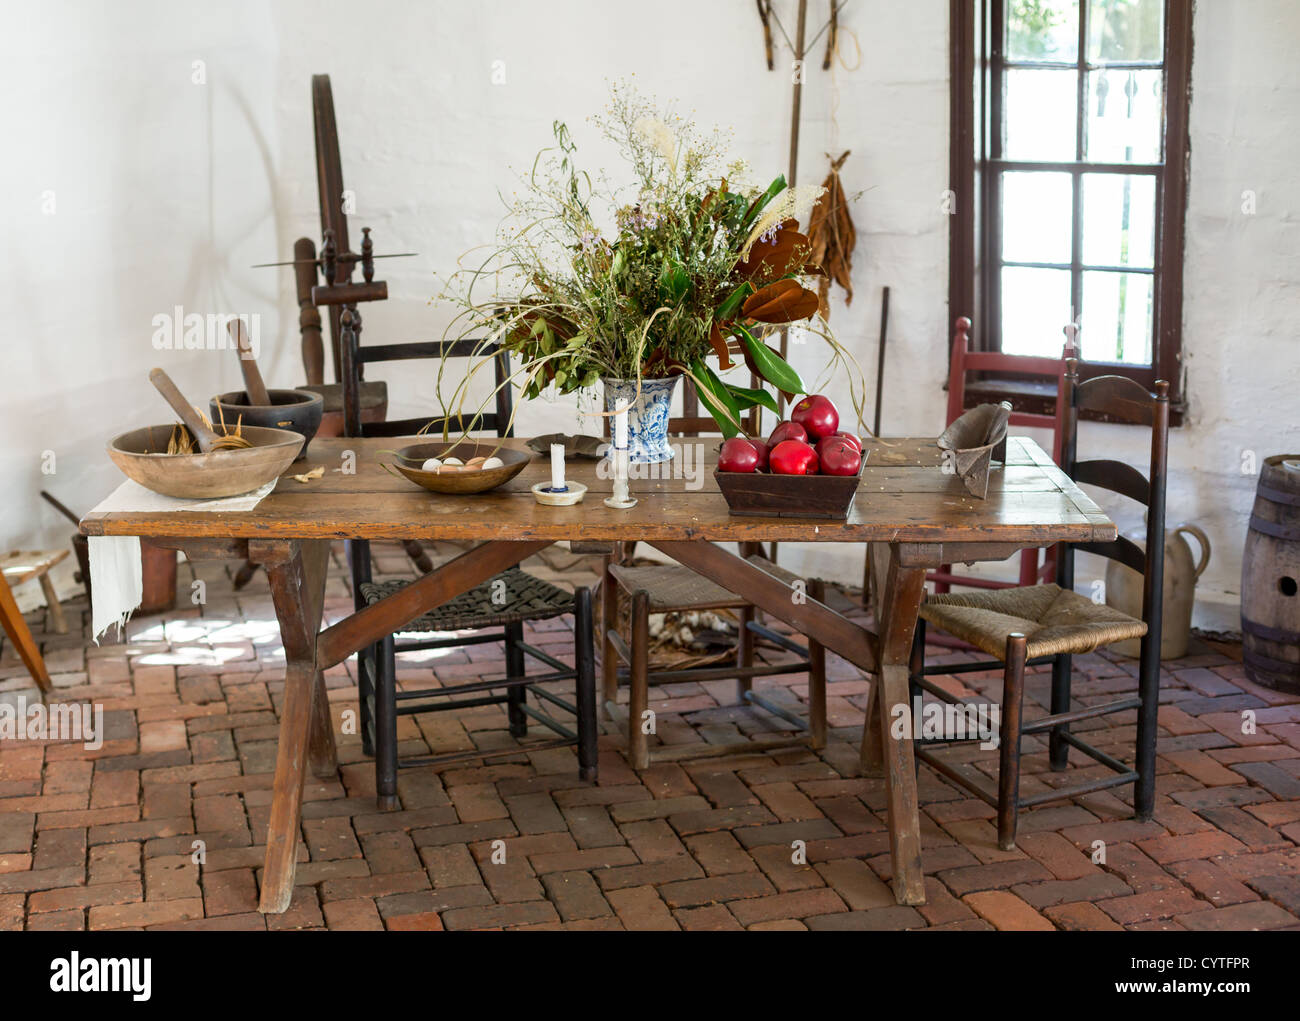 La mesa de la cocina colonial antiguo sillas alimentos y manzanas en sala blanca Foto de stock